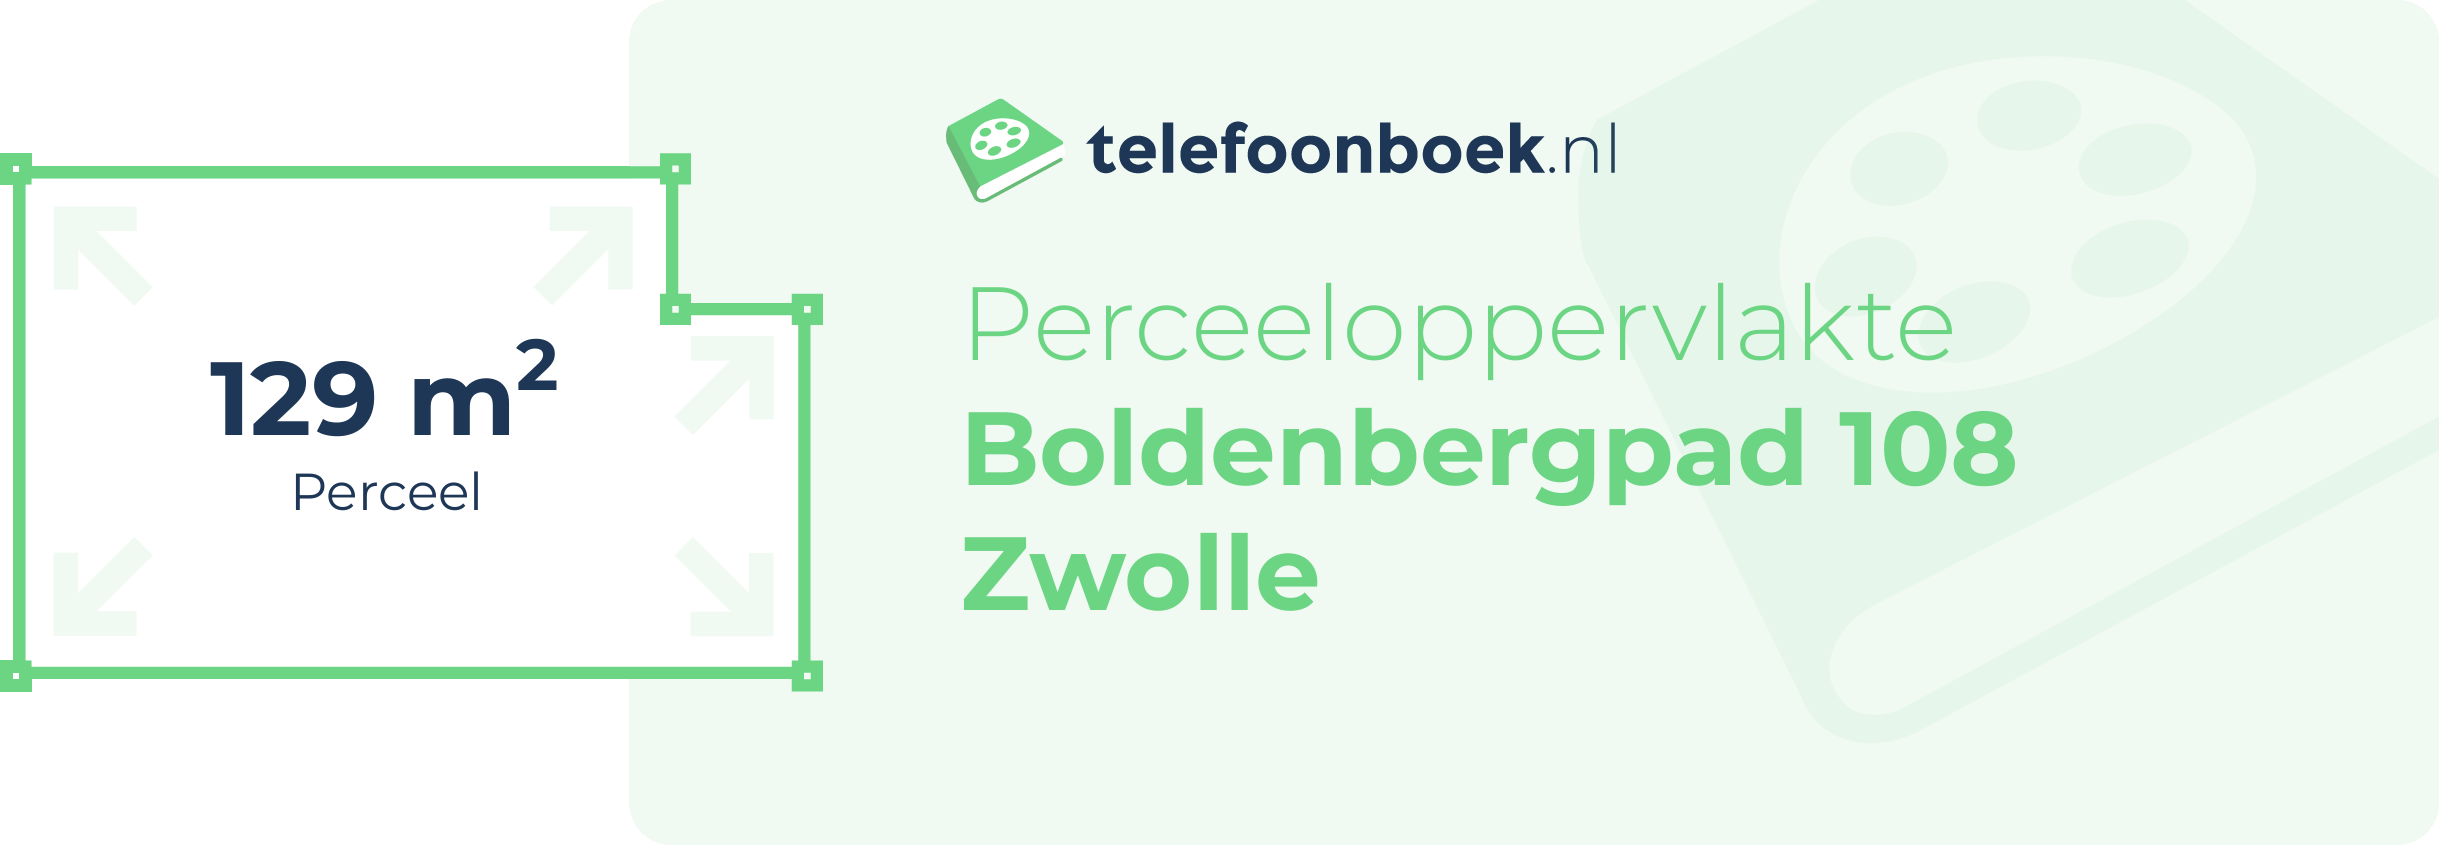 Perceeloppervlakte Boldenbergpad 108 Zwolle